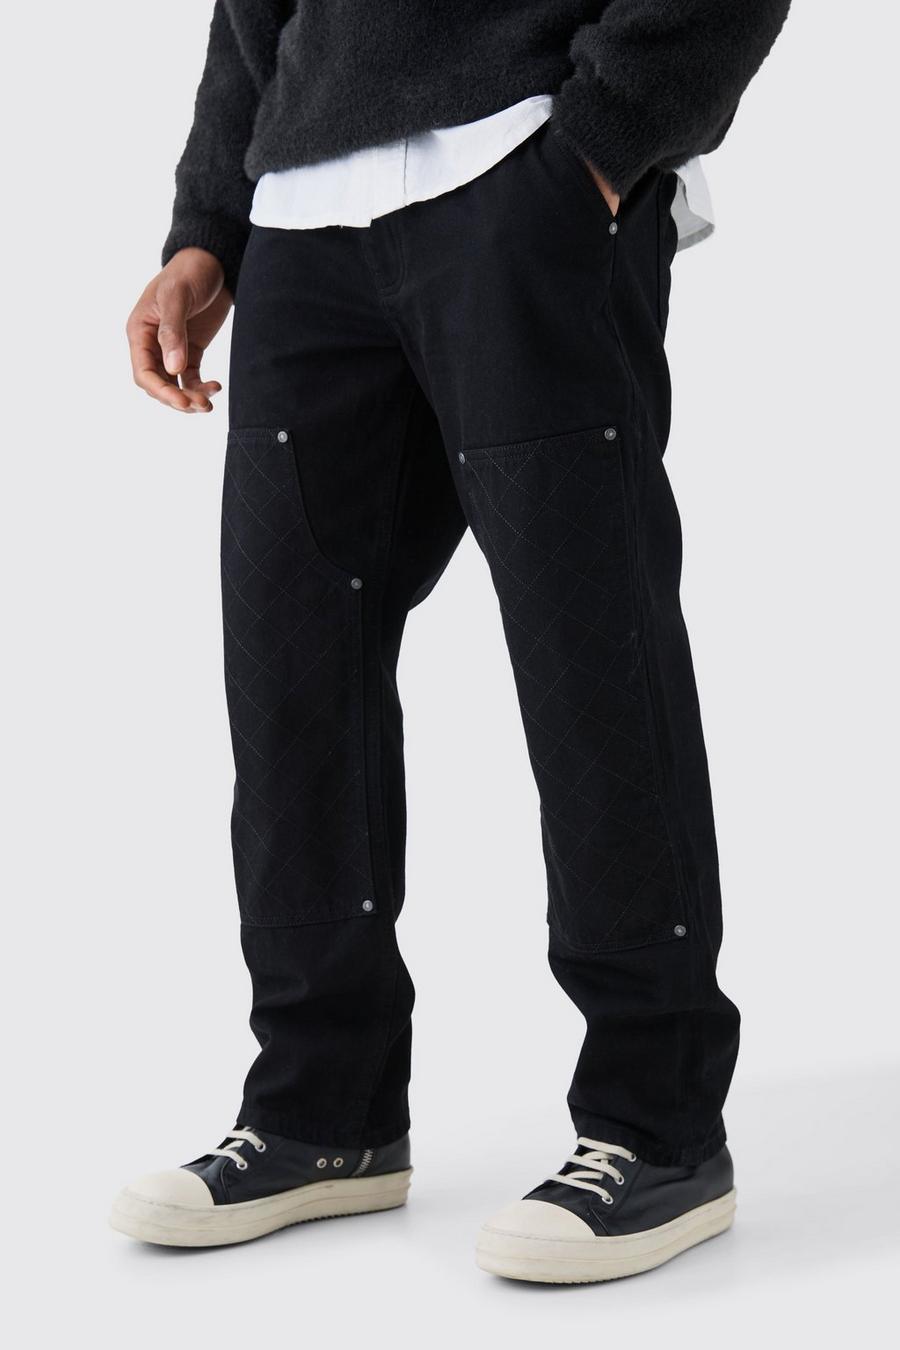 Jeans rilassati in denim rigido nero con cuciture e dettagli stile Carpenter, True black